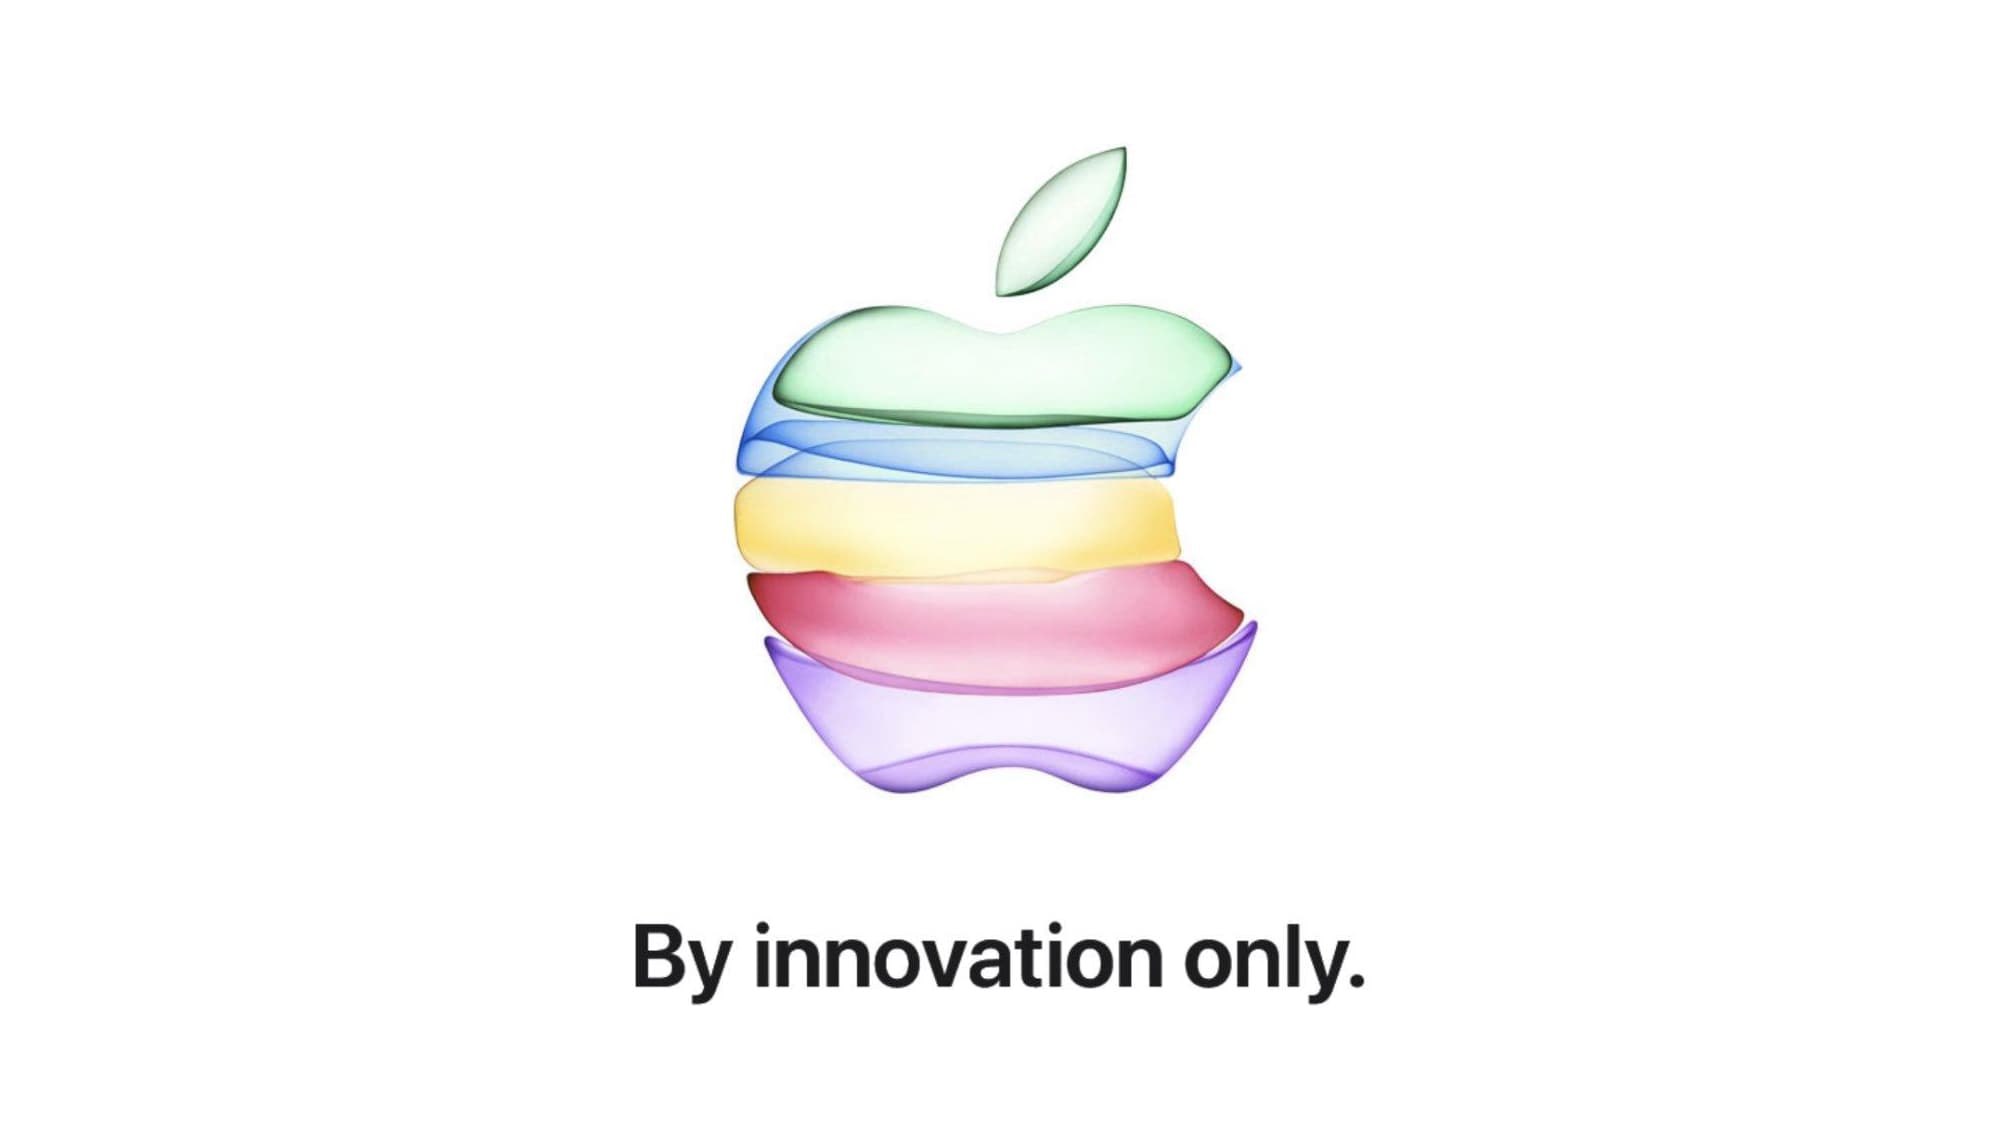 Convite de evento da Apple que ocorrerá em 10 de setembro